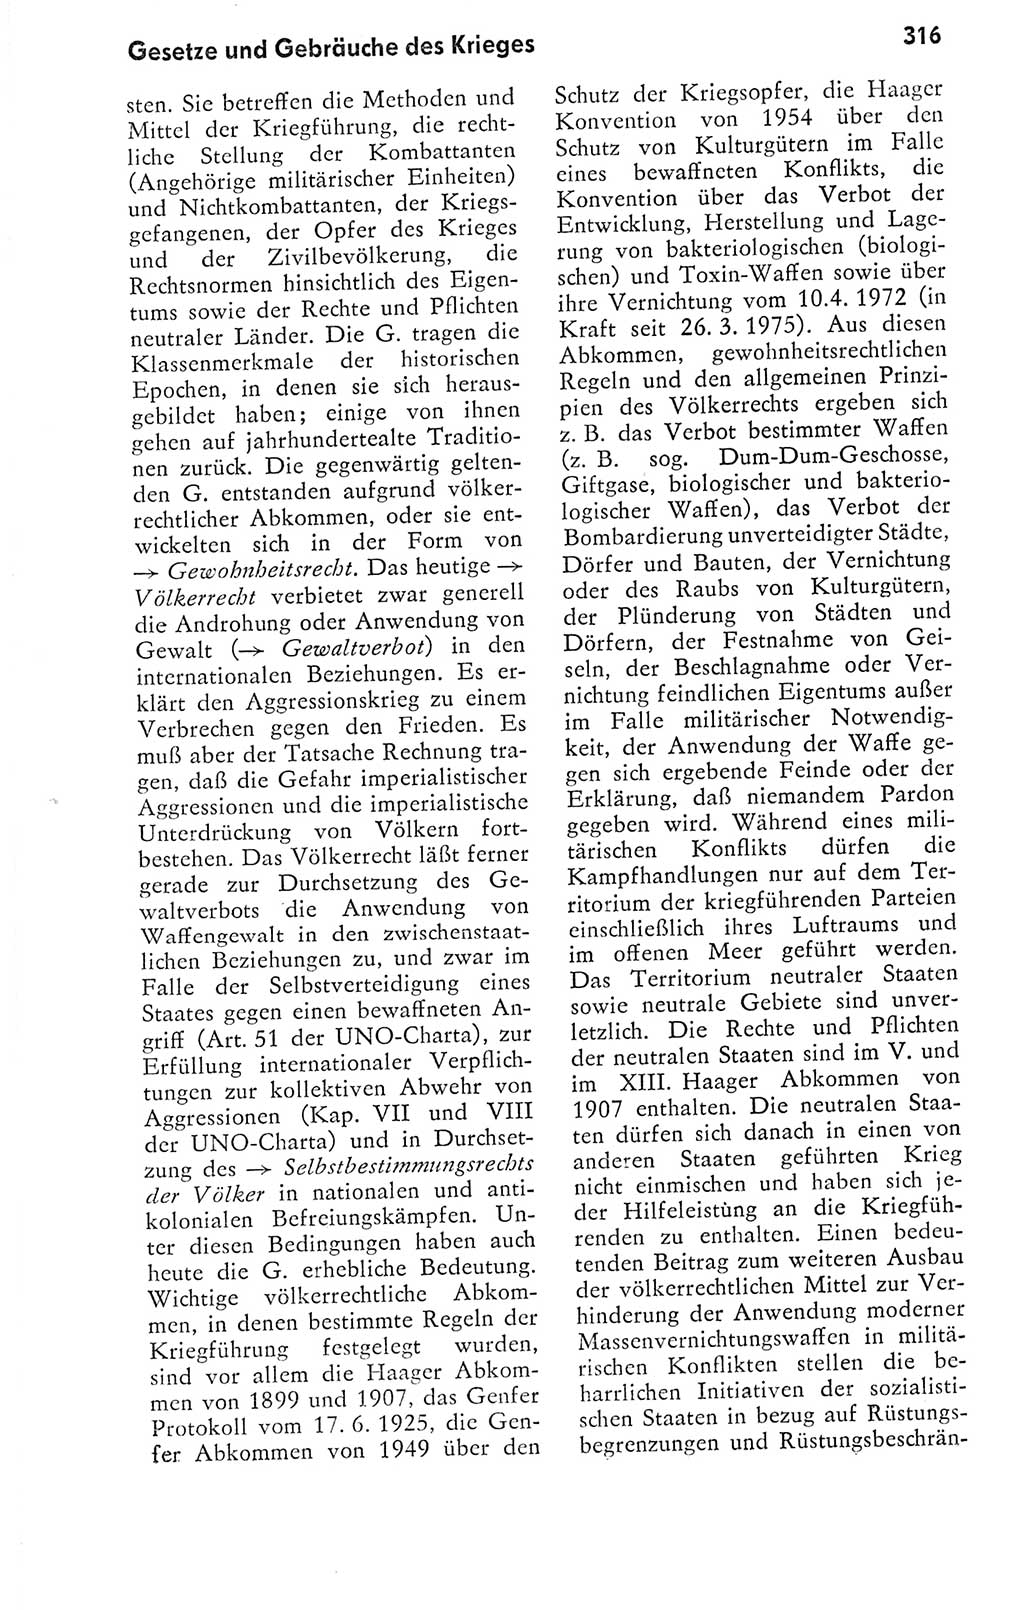 Kleines politisches Wörterbuch [Deutsche Demokratische Republik (DDR)] 1978, Seite 316 (Kl. pol. Wb. DDR 1978, S. 316)